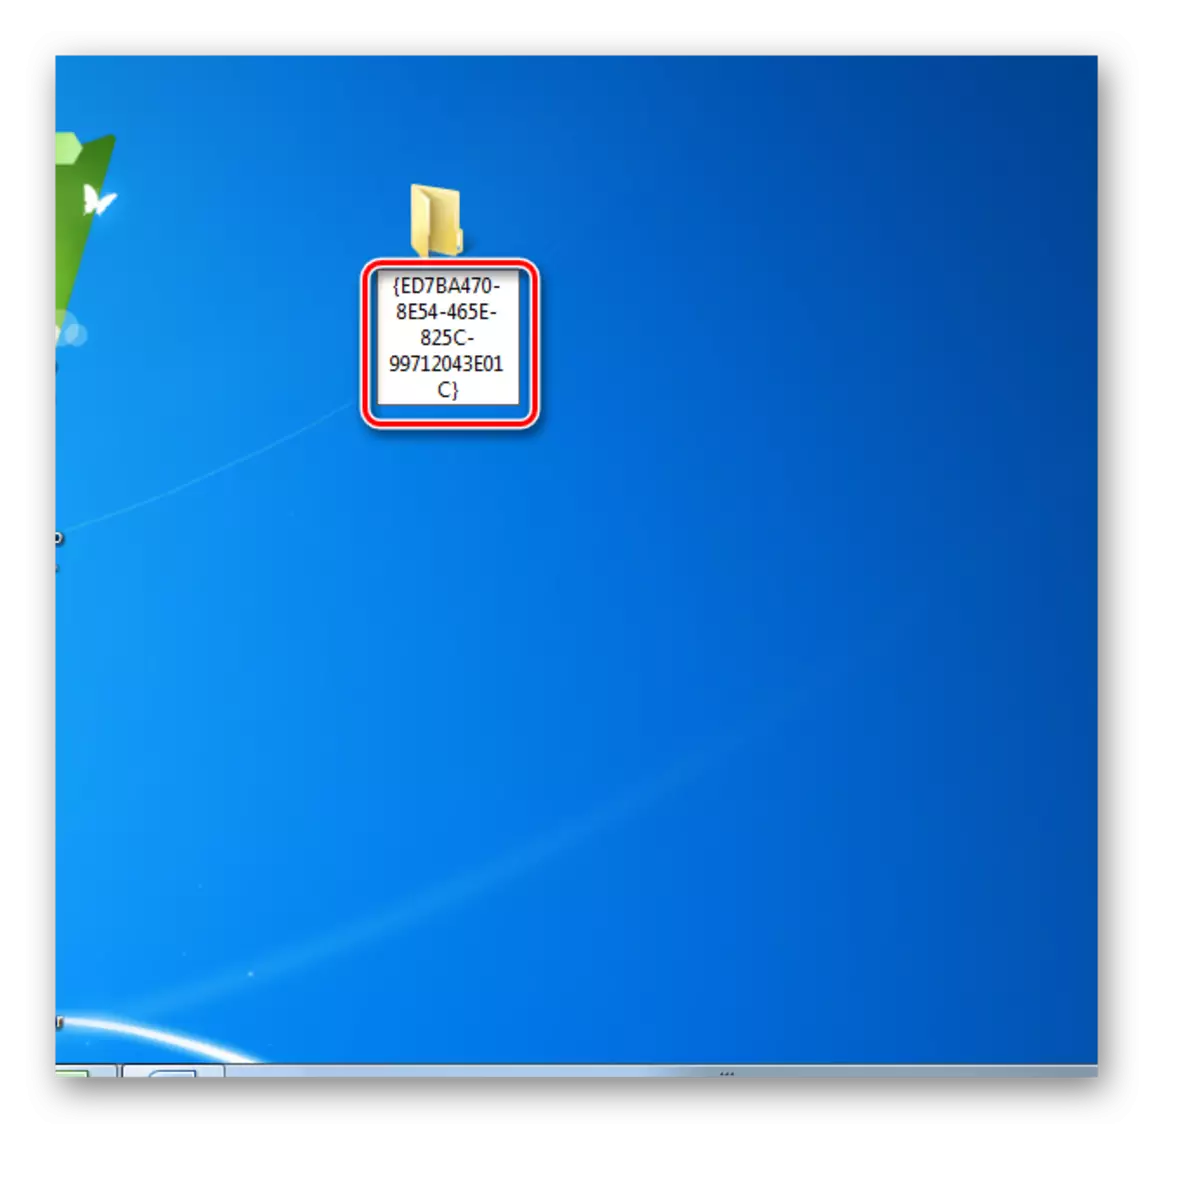 Windows 7 дахь ширээний компьютер дээрх фолдерыг нэрлэнэ үү